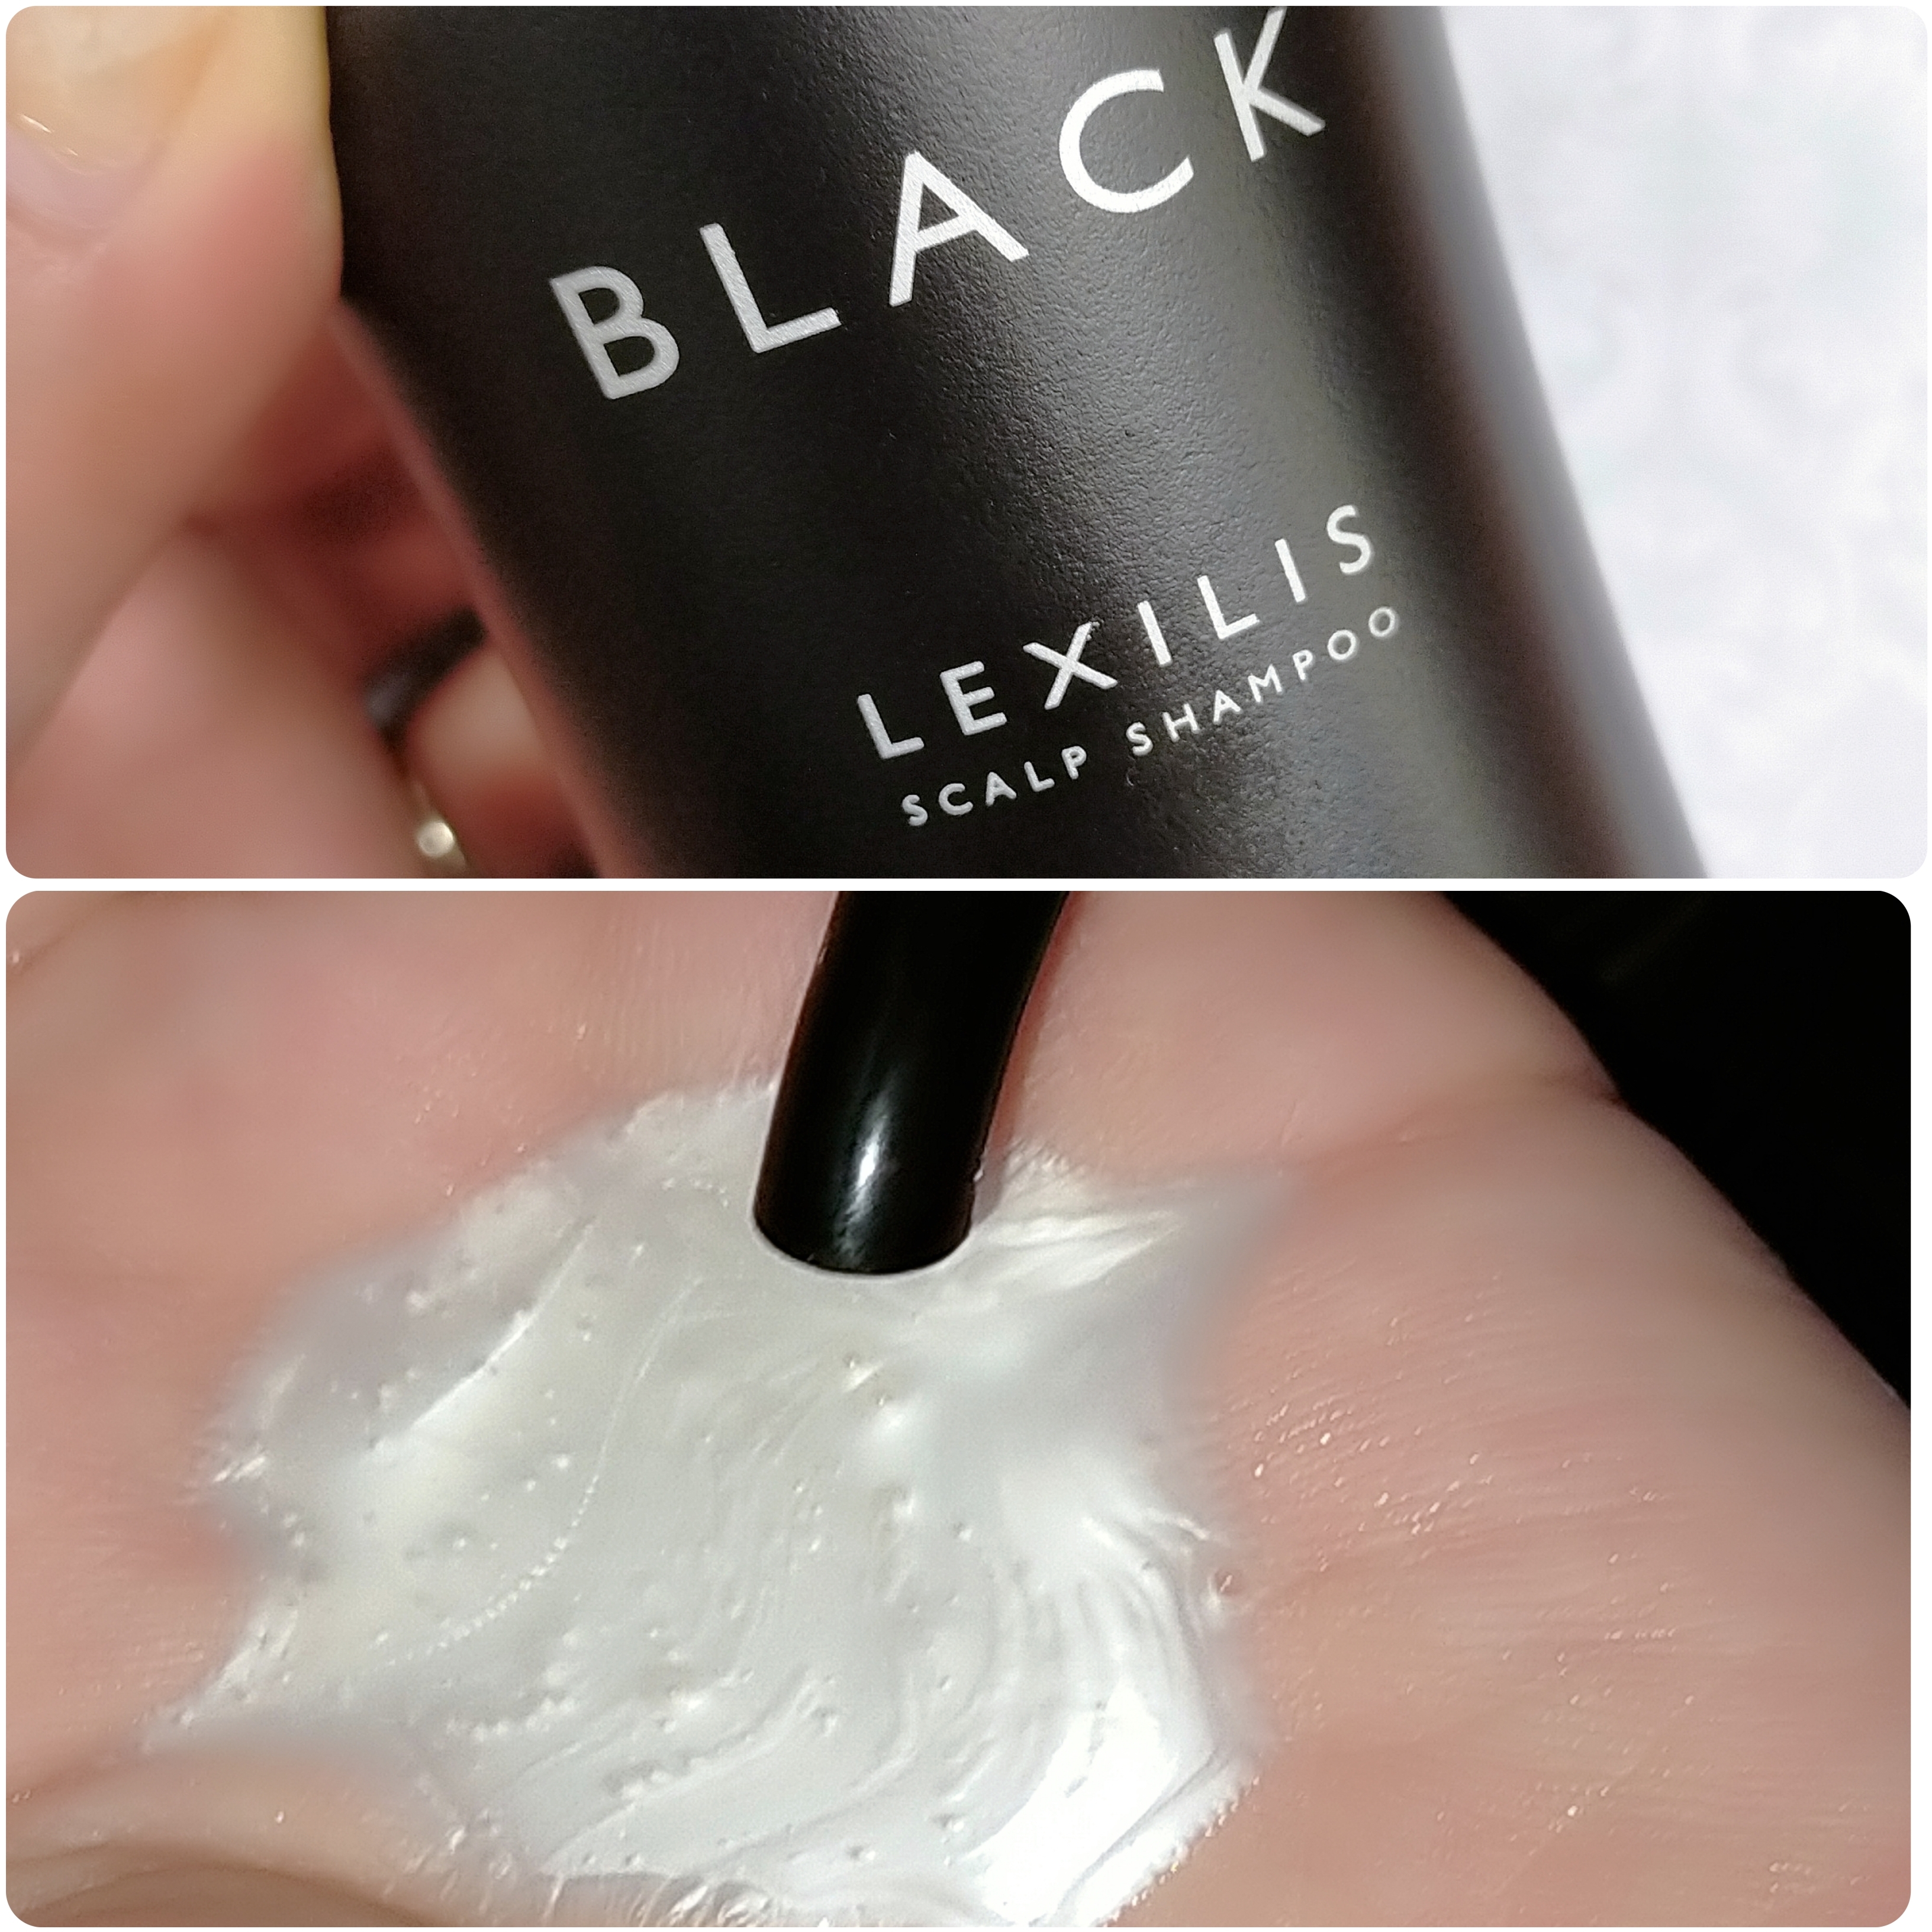 LEXILIS BLACK(レキシリスブラック) スカルプシャンプーの良い点・メリットに関するみこさんの口コミ画像2